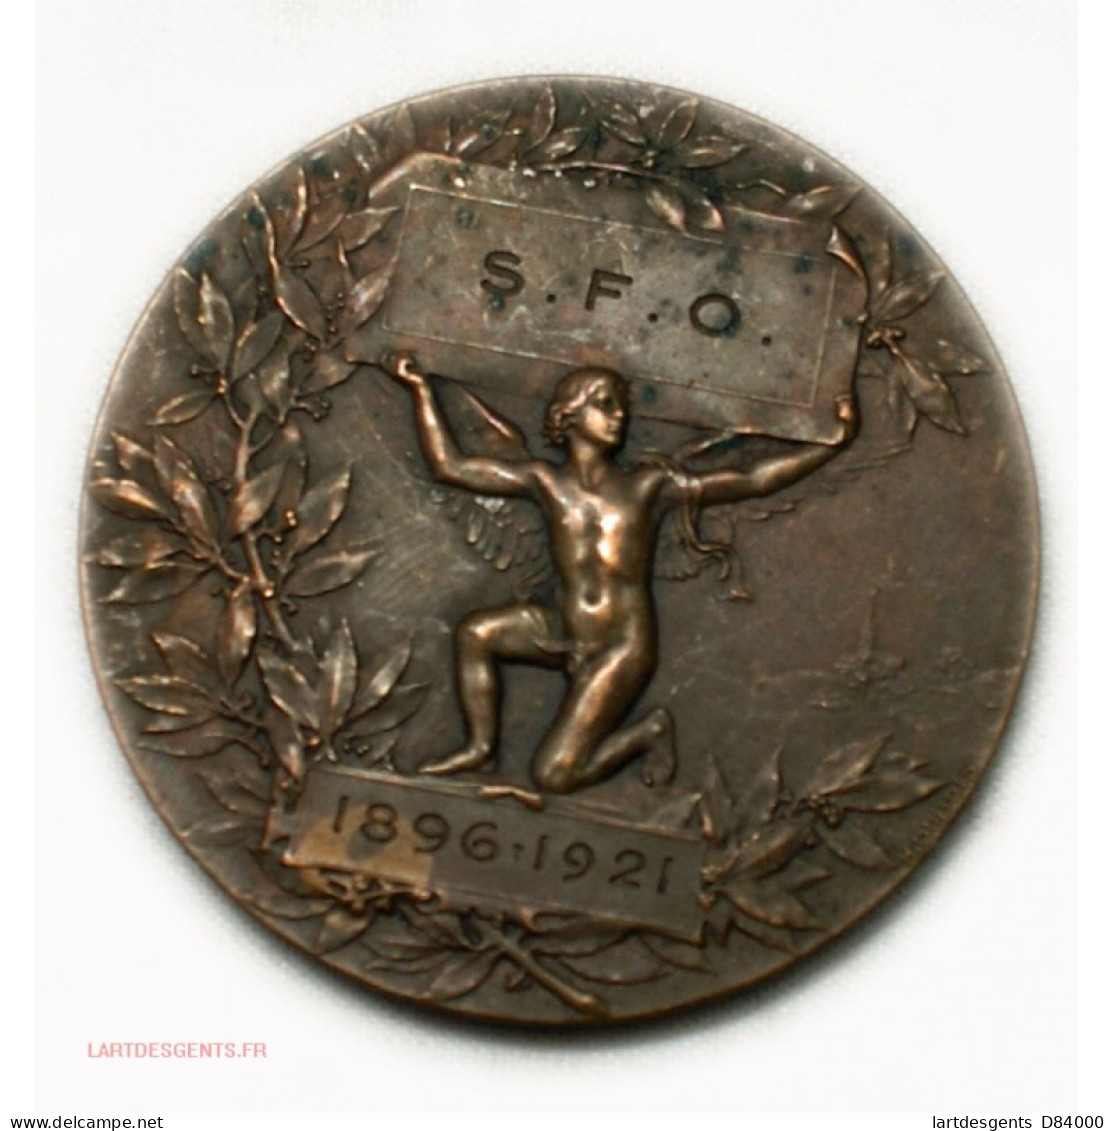 Médaille S.F.O 1896-1921 Par H. DUBOIS - Royal / Of Nobility